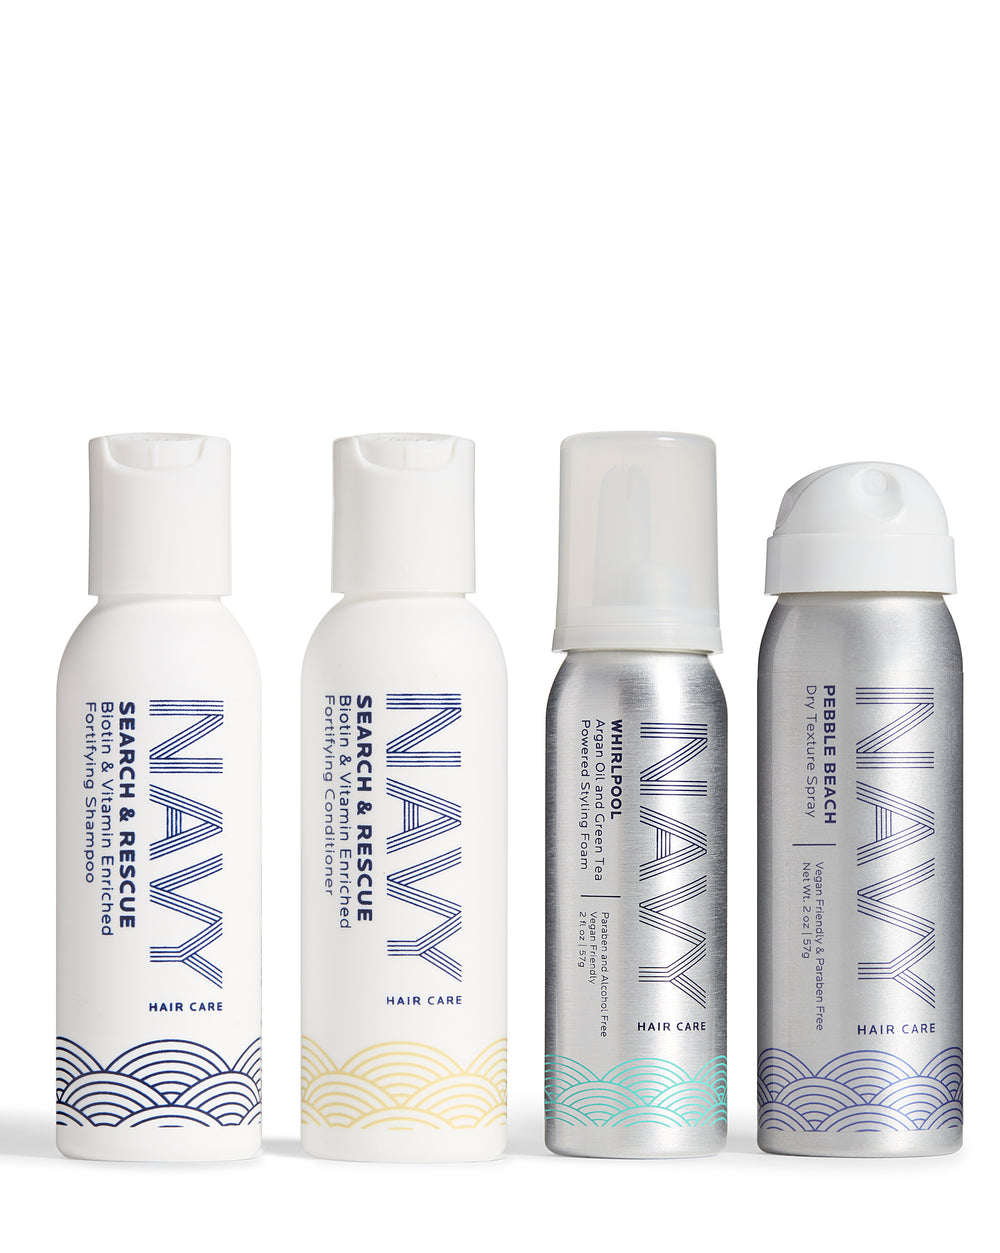  NAVY HAIR CARE Dry Shampoo for Women & Men 3oz